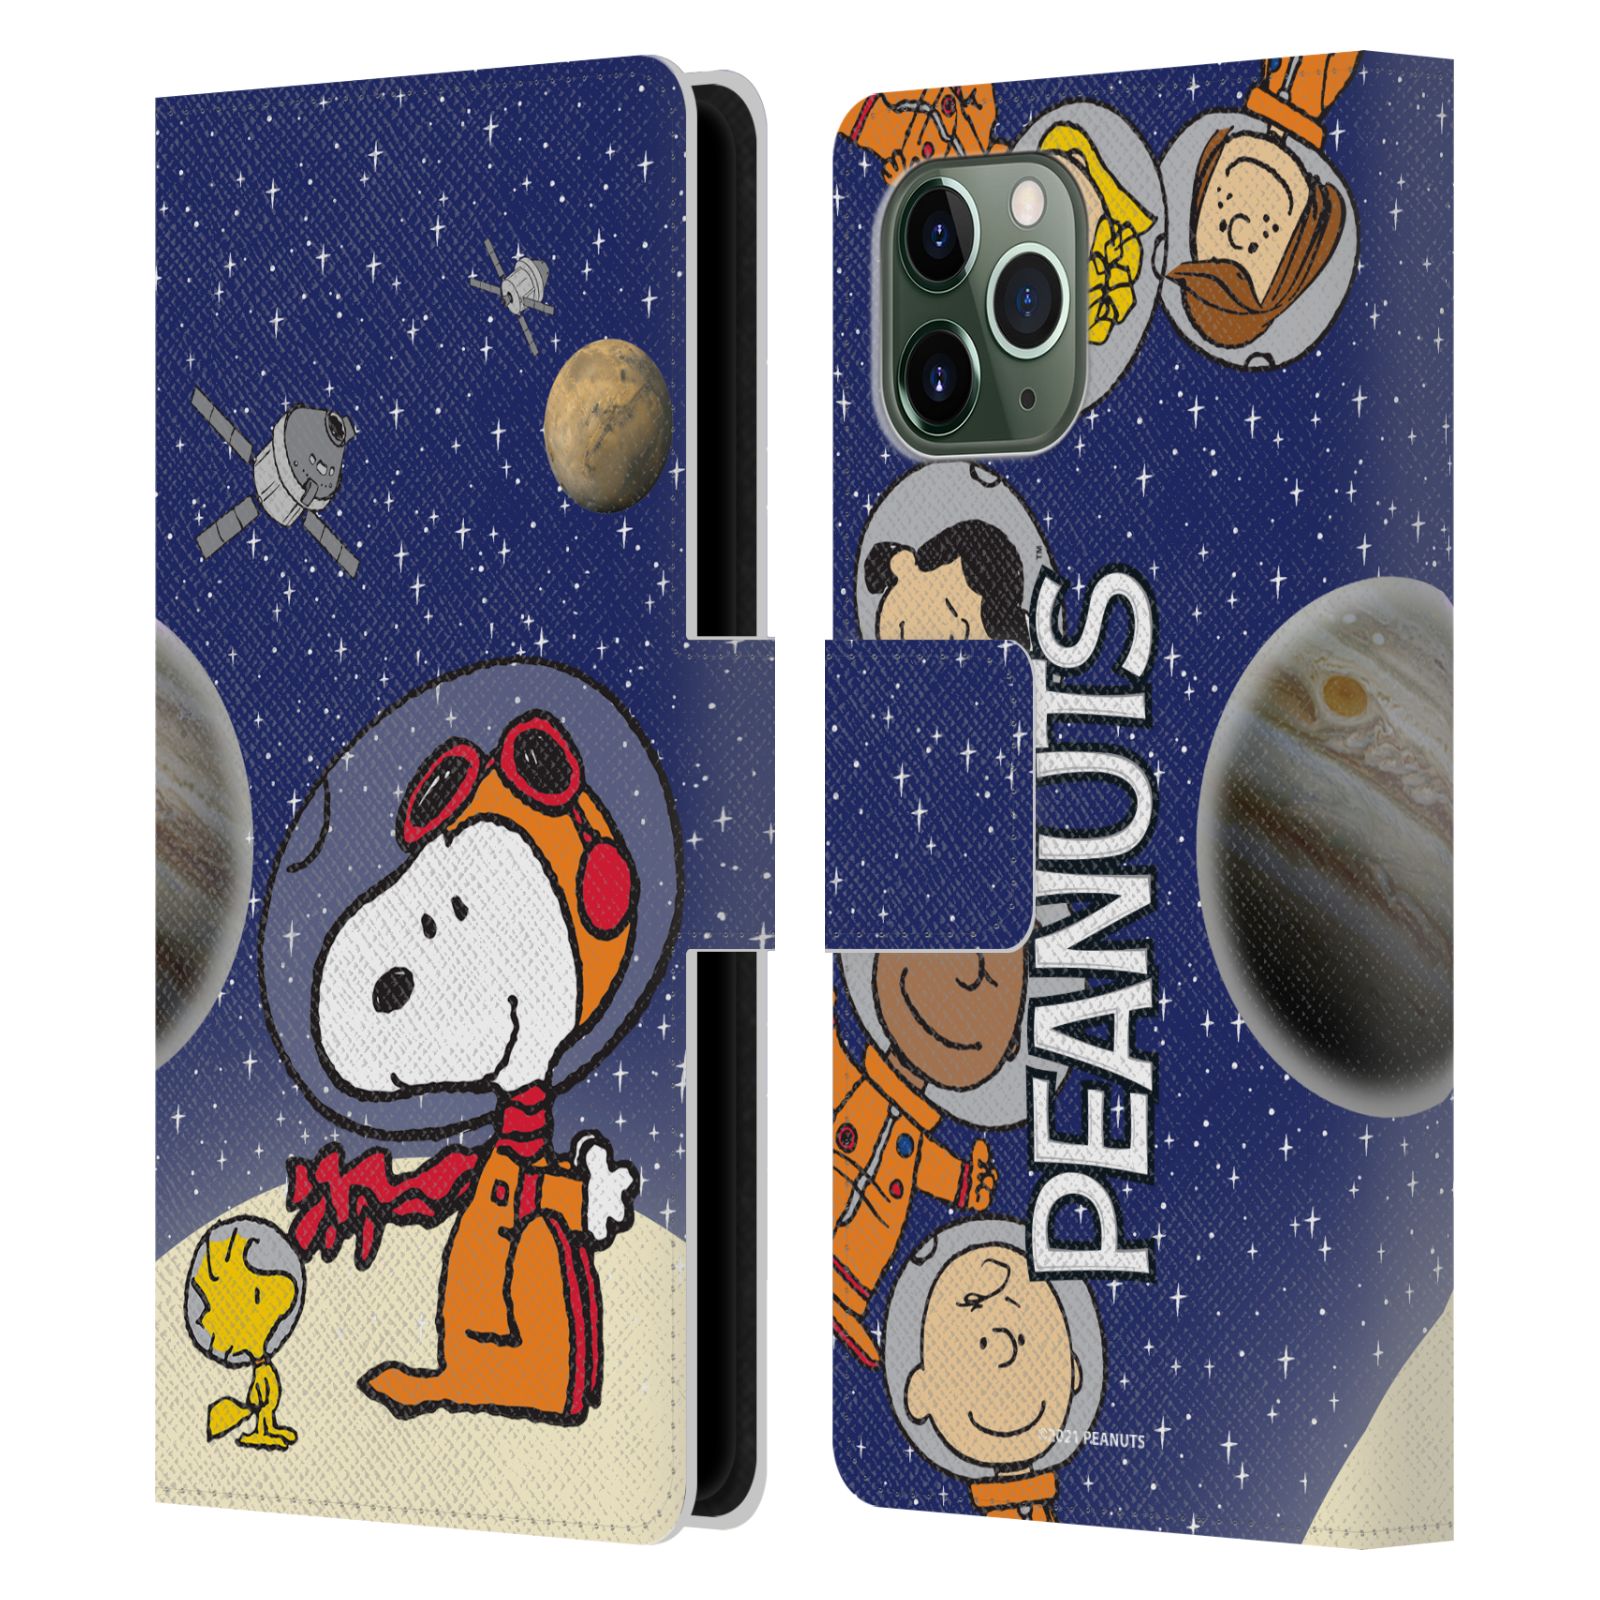 Pouzdro na mobil Apple Iphone 11 Pro - HEAD CASE - Peanuts Snoopy ve vesmíru 2